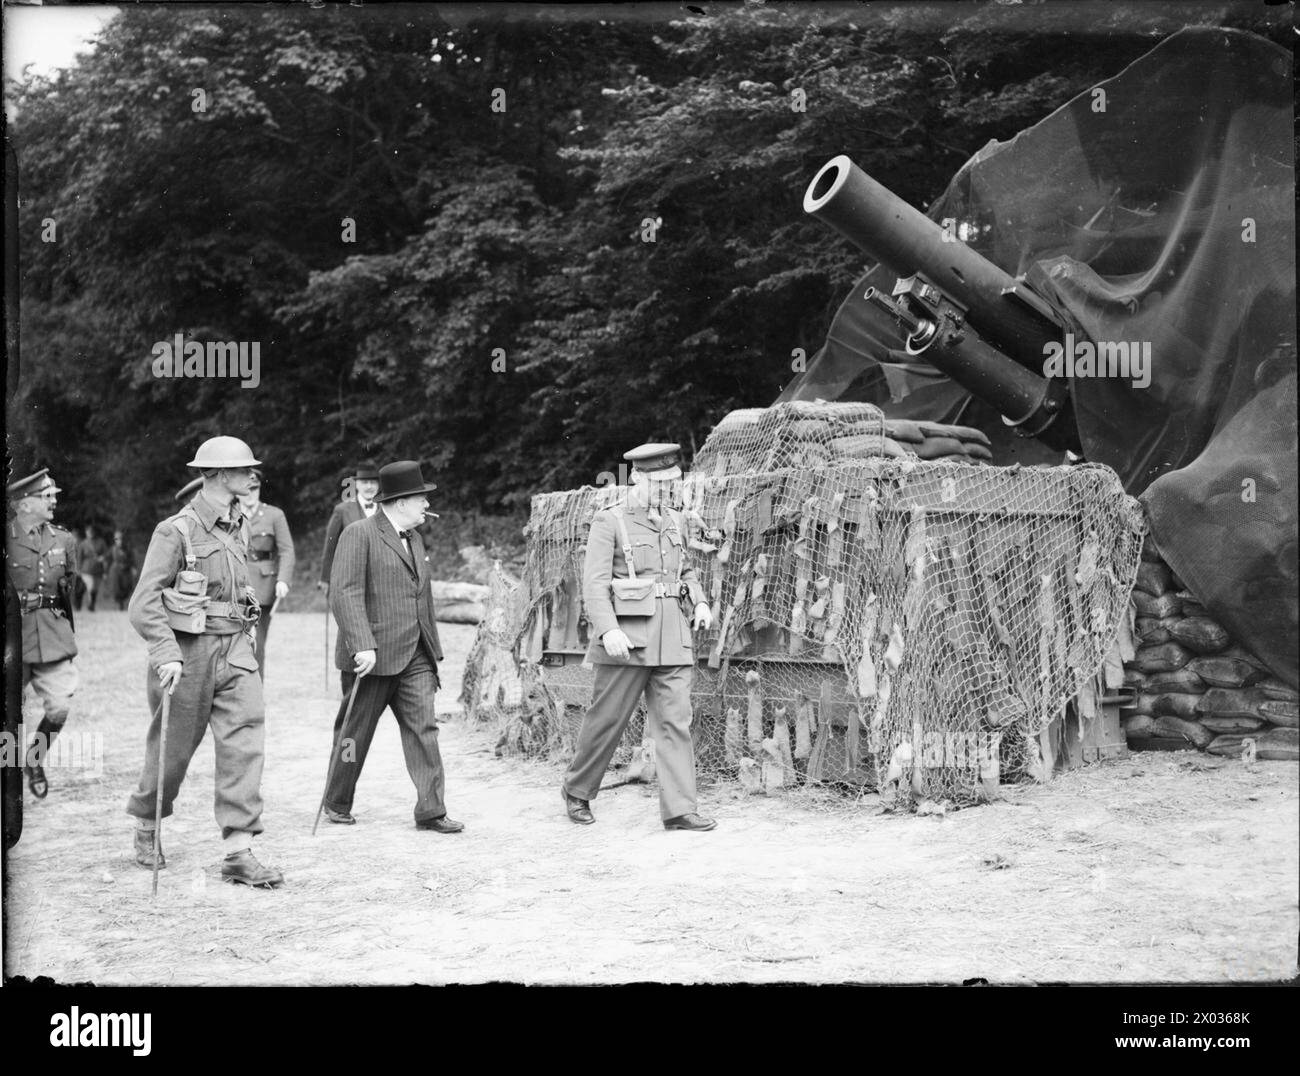 L'ARMÉE BRITANNIQUE AU ROYAUME-UNI 1939-45 - Winston Churchill inspectant des canons de 9,2 pouces du 57e régiment lourd, Royal Artillery, lors d'une tournée des défenses de la côte est, 7 août 1940 Churchill, Winston Leonard Spencer, British Army, Royal Artillery, 57e régiment lourd Banque D'Images